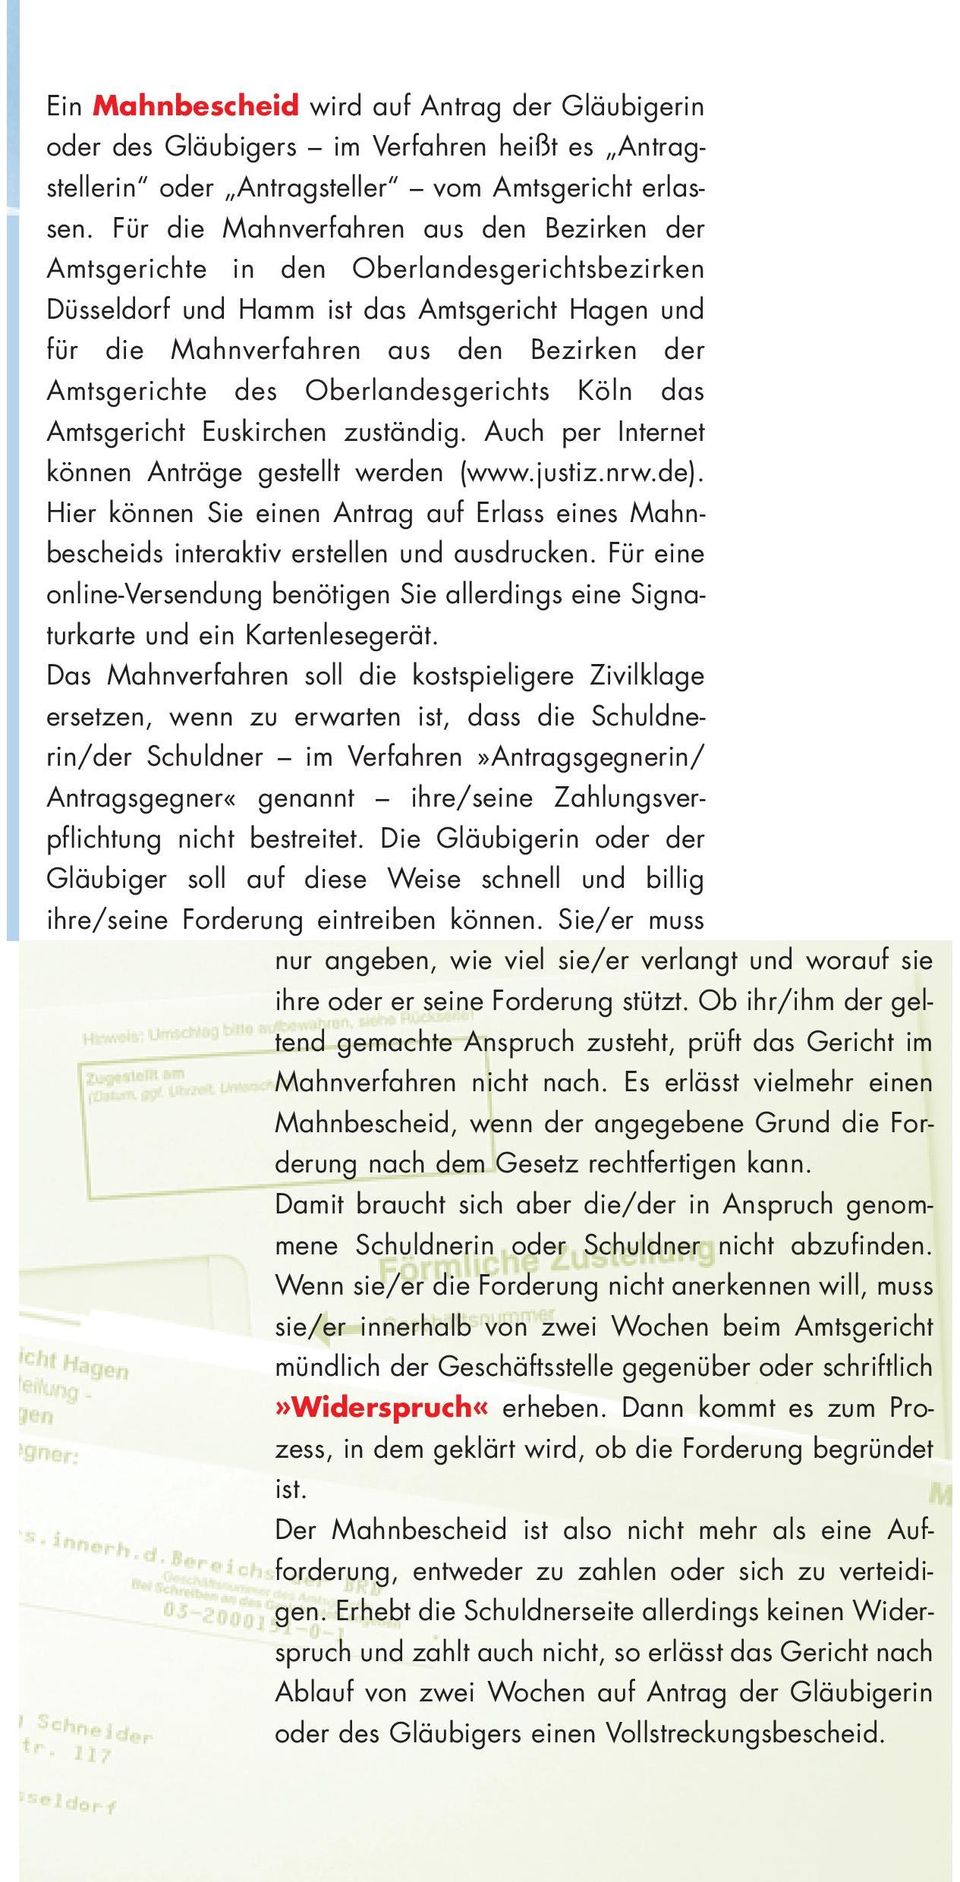 des Oberlandes gerichts Köln das Amtsgericht Euskirchen zuständig. Auch per Internet können Anträge gestellt werden (www.justiz.nrw.de).